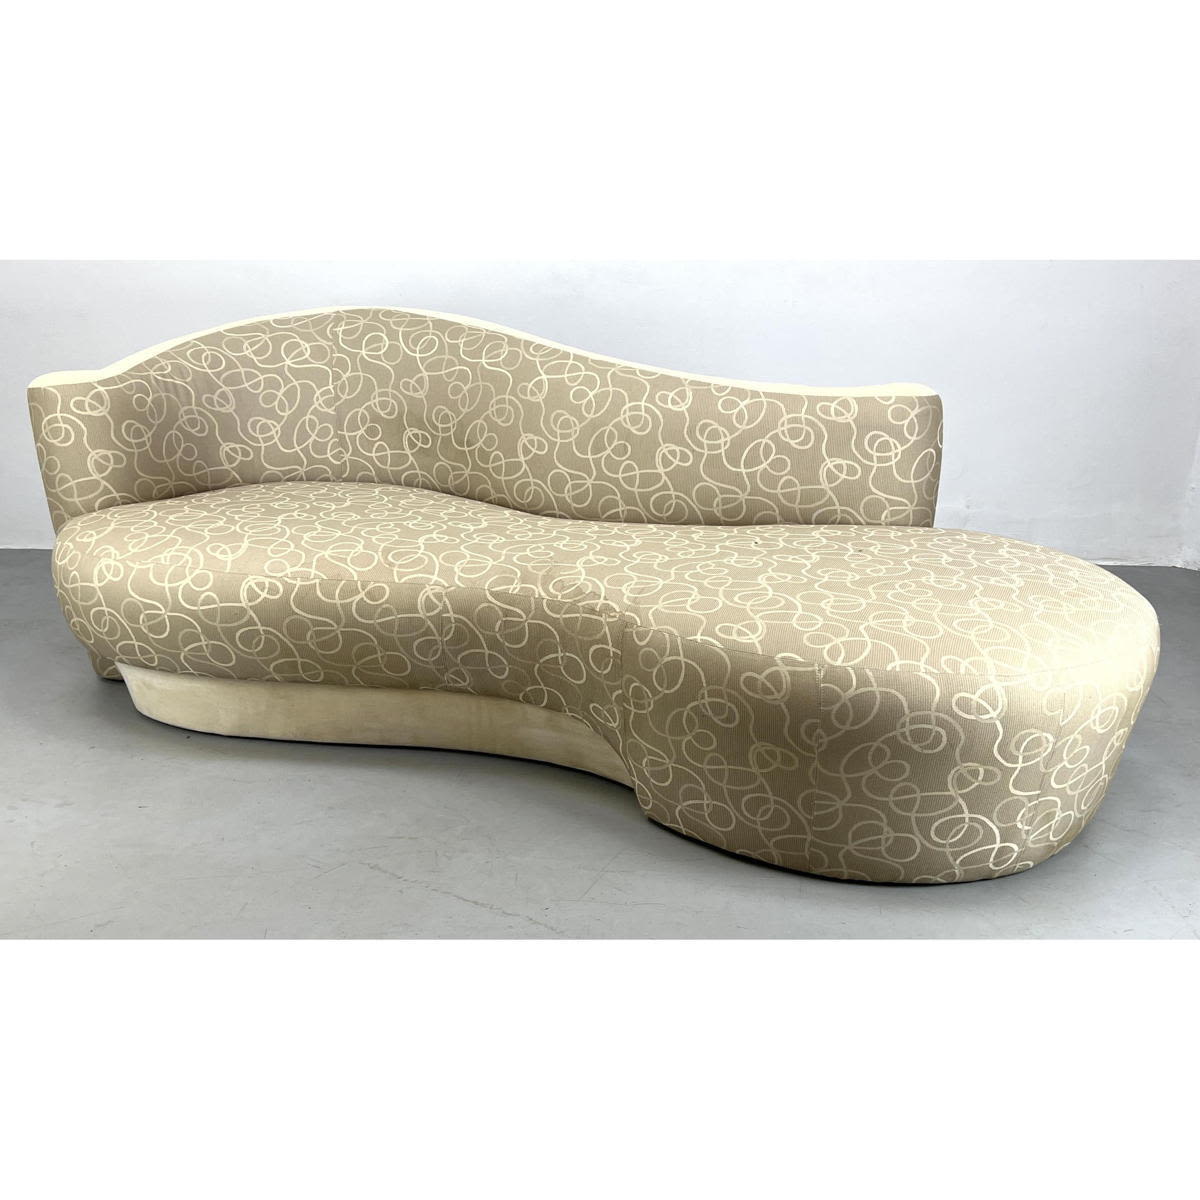 Weiman Kagan style serpentine sofa 2bb066